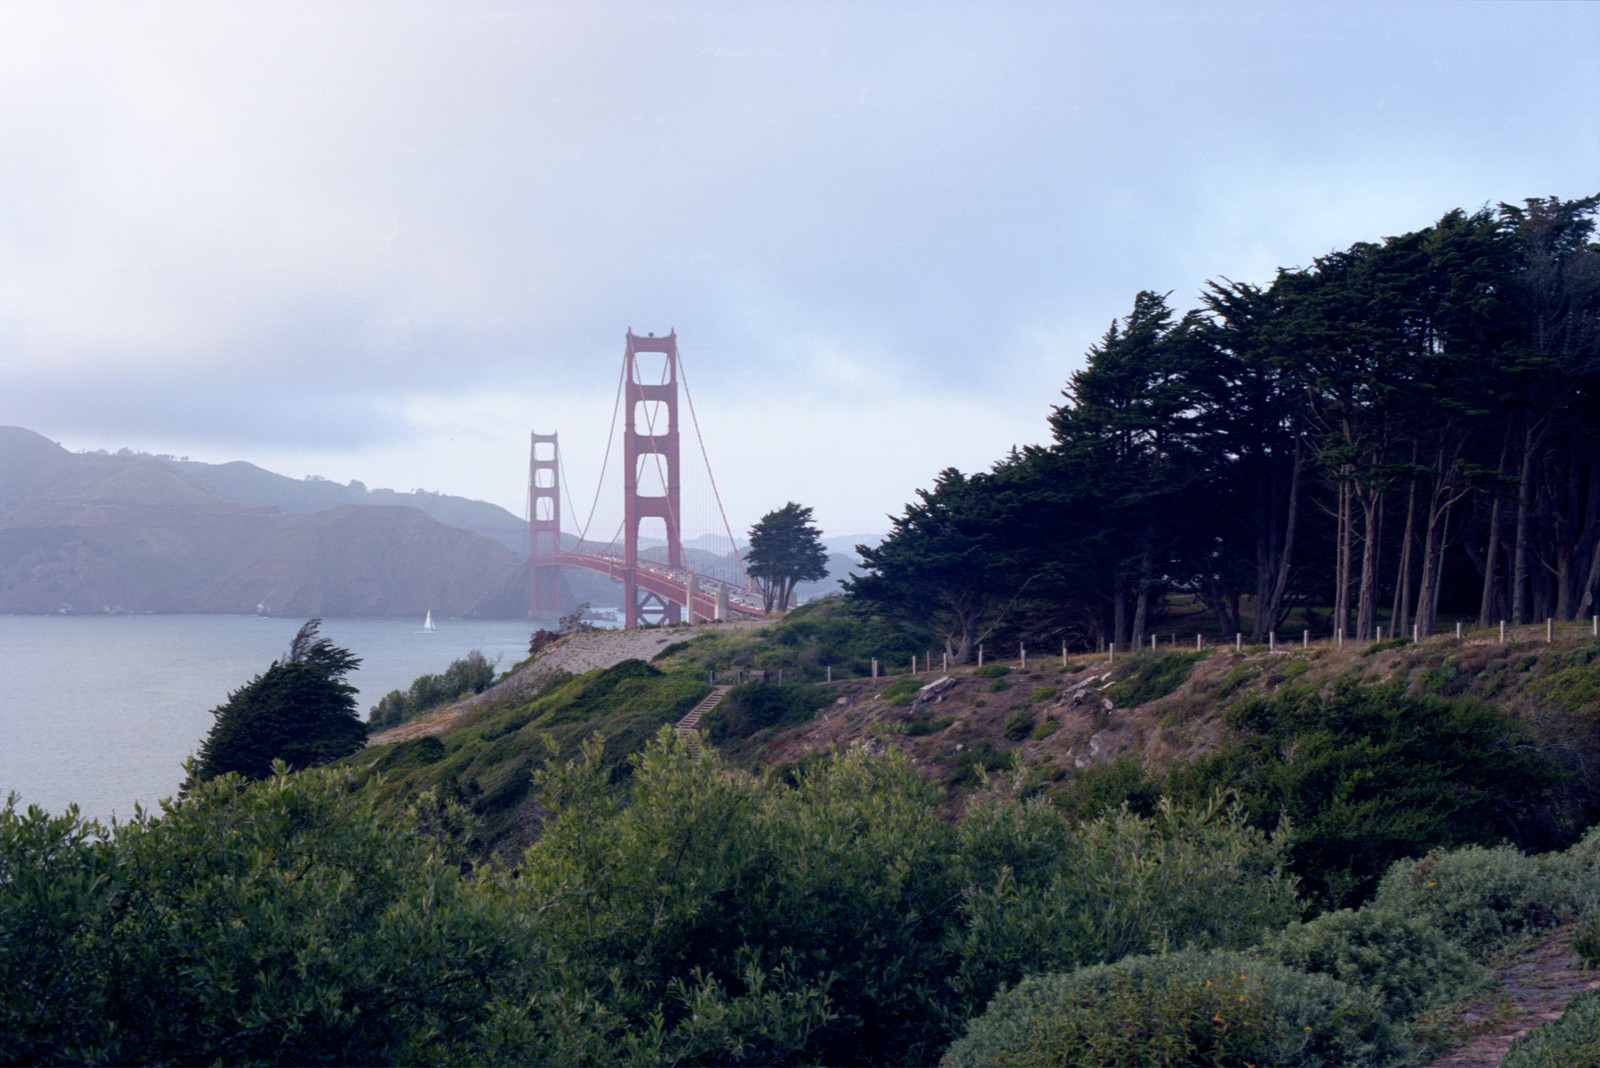 The Presidio of San Francisco.